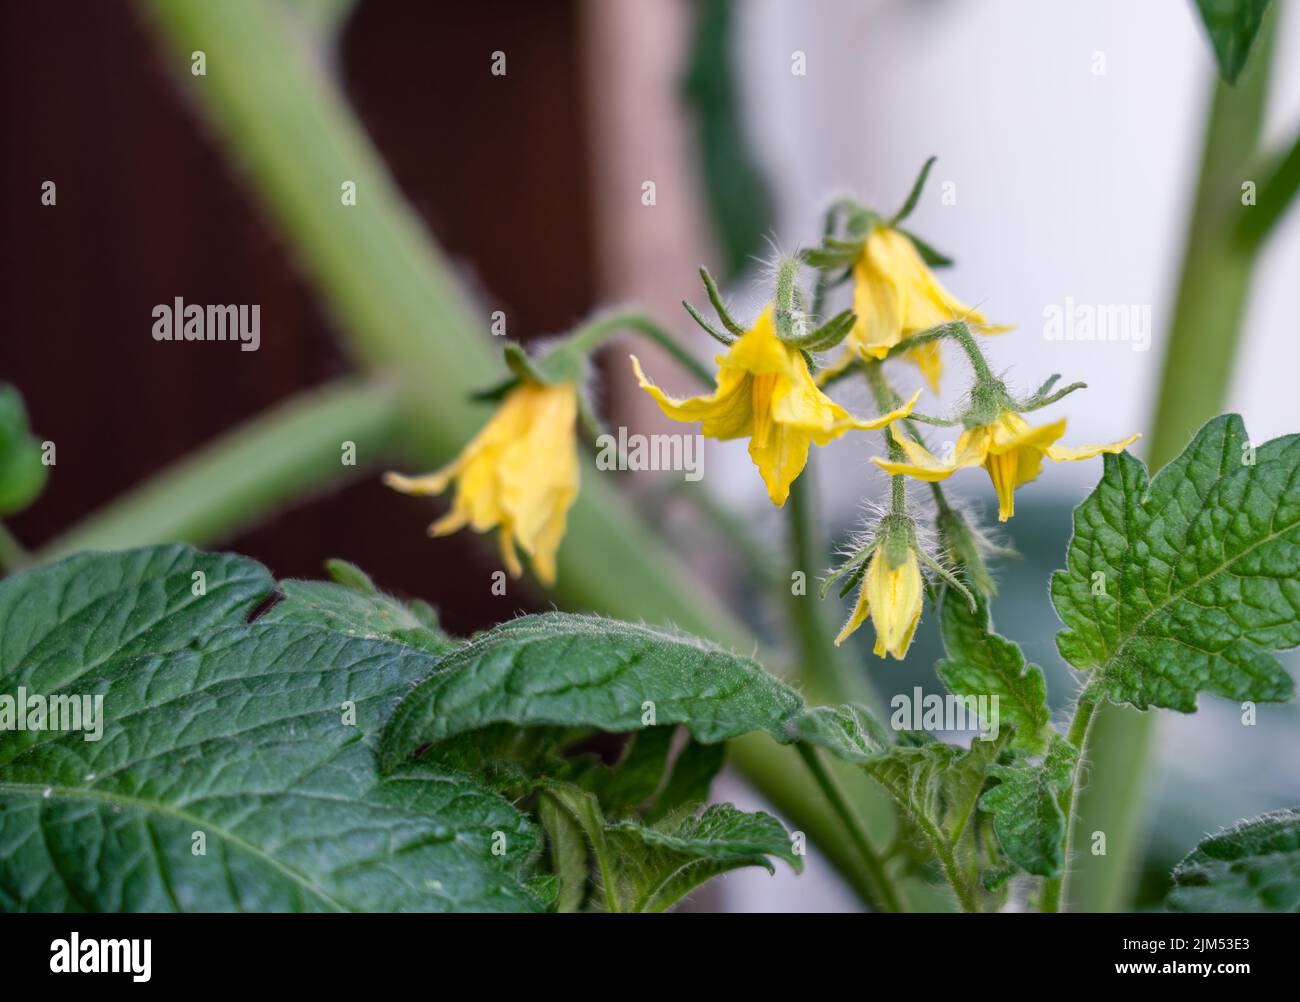 Gros plan détaillé des fleurs d'été sur la tomate Lycopersicon esculentum Banque D'Images